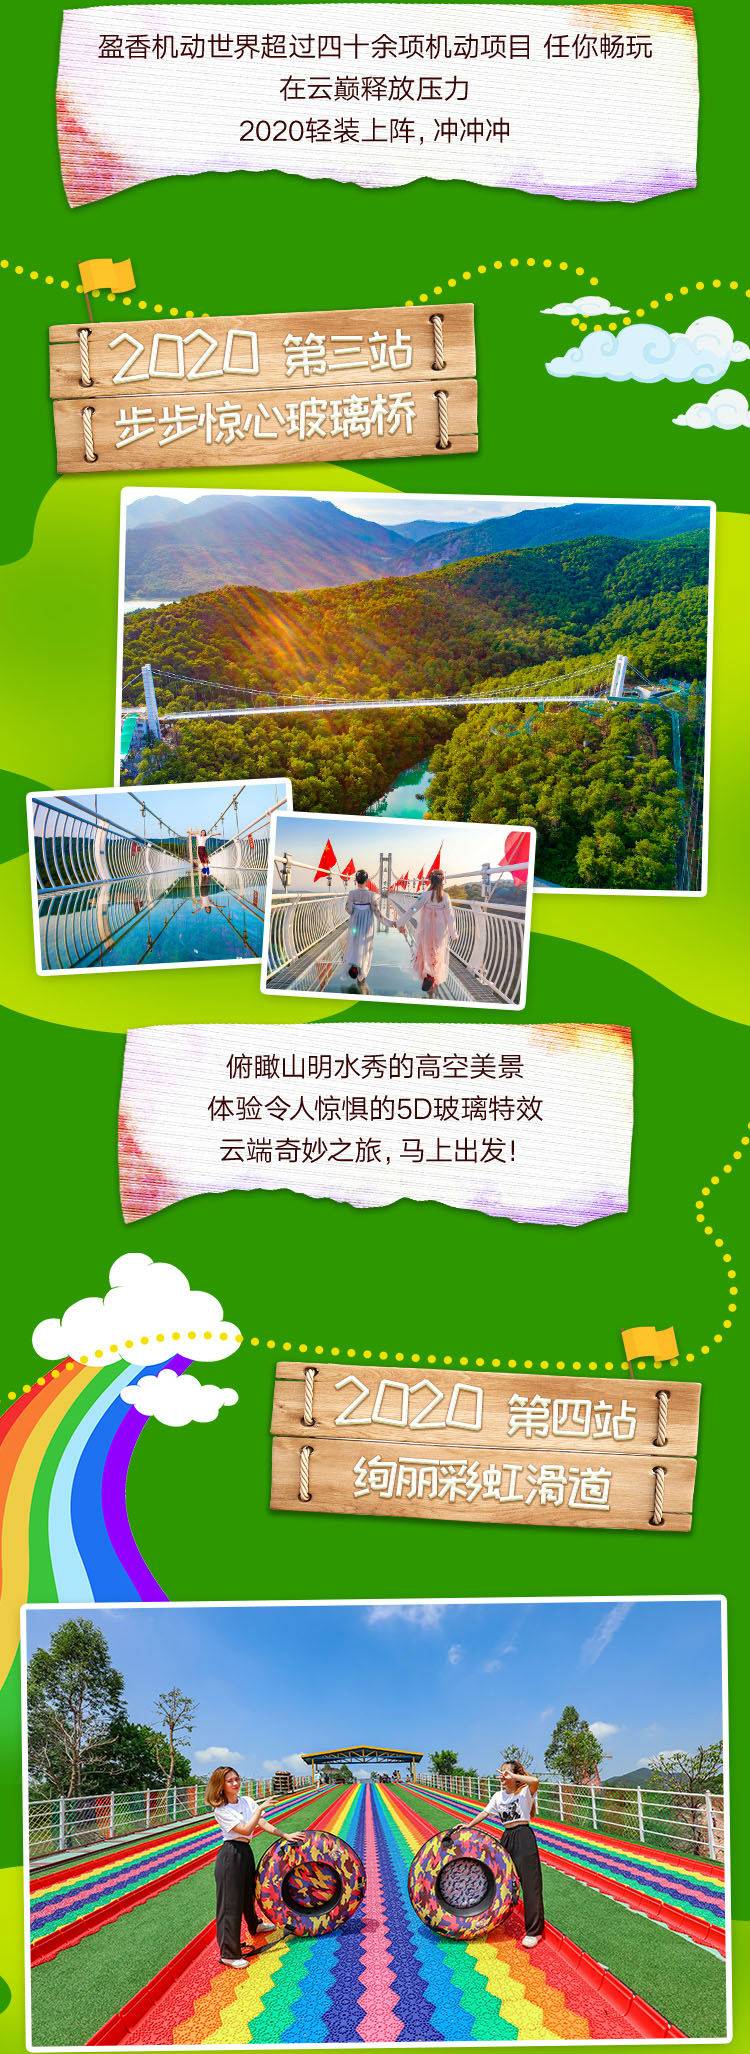 【常规票】盈香生态园儿童票1张含玻璃桥1次+机动游戏+四季花海+彩虹滑道